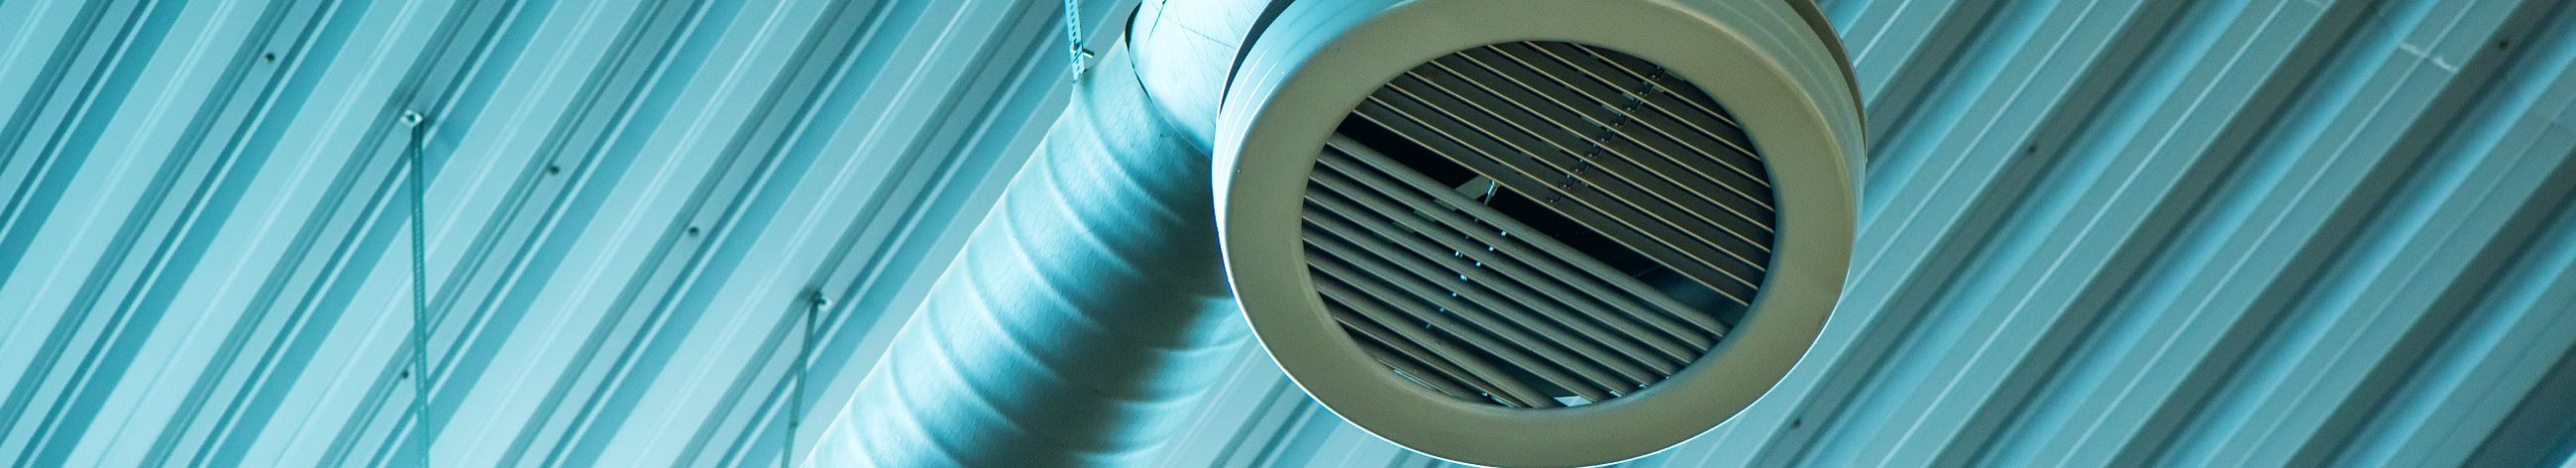 Pakume kvaliteetseid ventilatsioonitöid ja jahutuslahendusi, sealhulgas paigaldust, hooldust, remonti, puhastust ning seadmete müüki ja konsultatsioone.